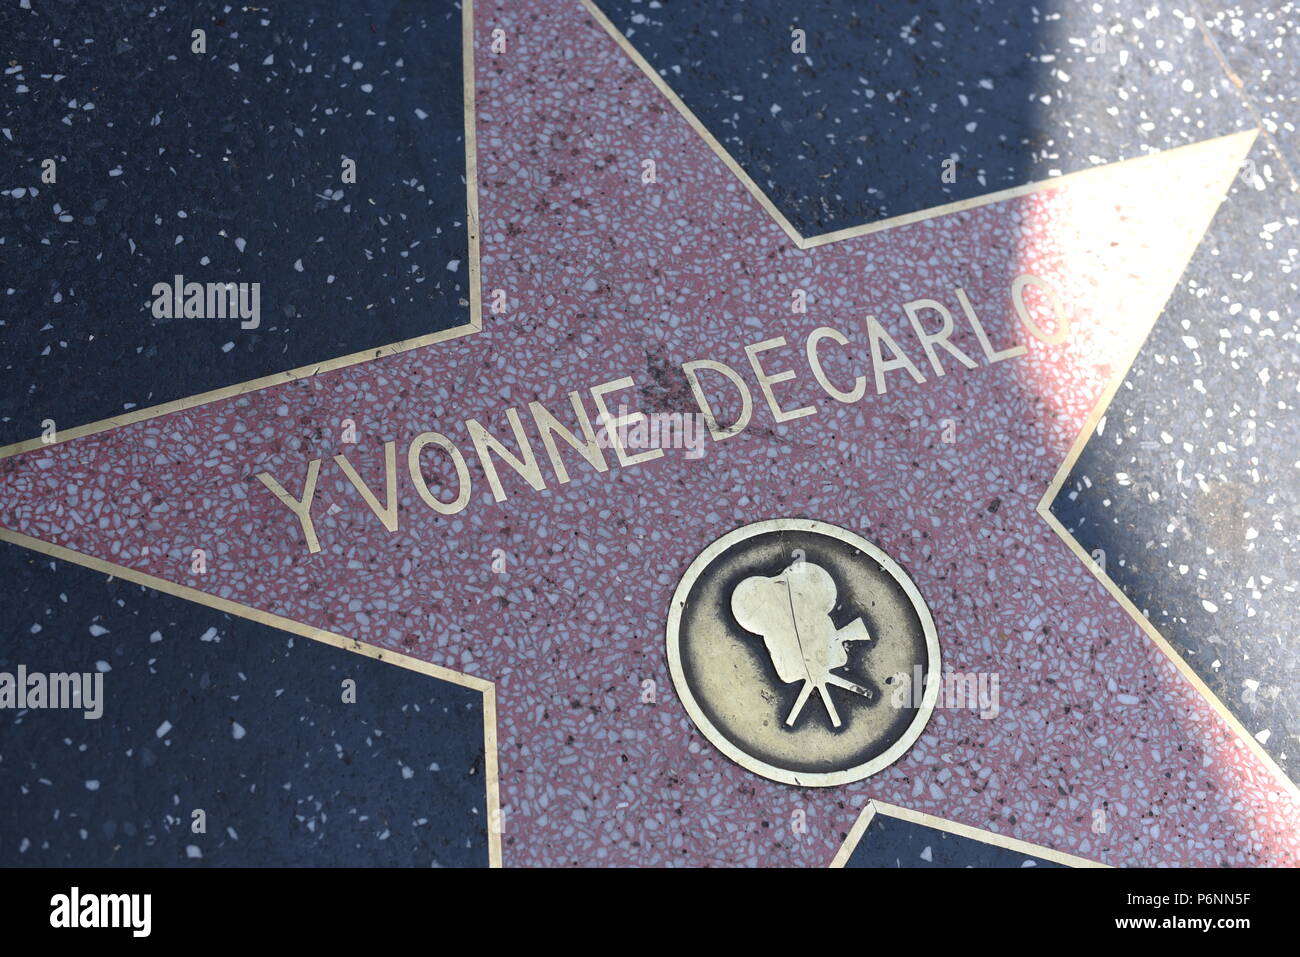 HOLLYWOOD, CA - 29 Giugno: Yvonne Decarlo stella sulla Hollywood Walk of Fame in Hollywood, la California il 29 giugno 2018. Foto Stock